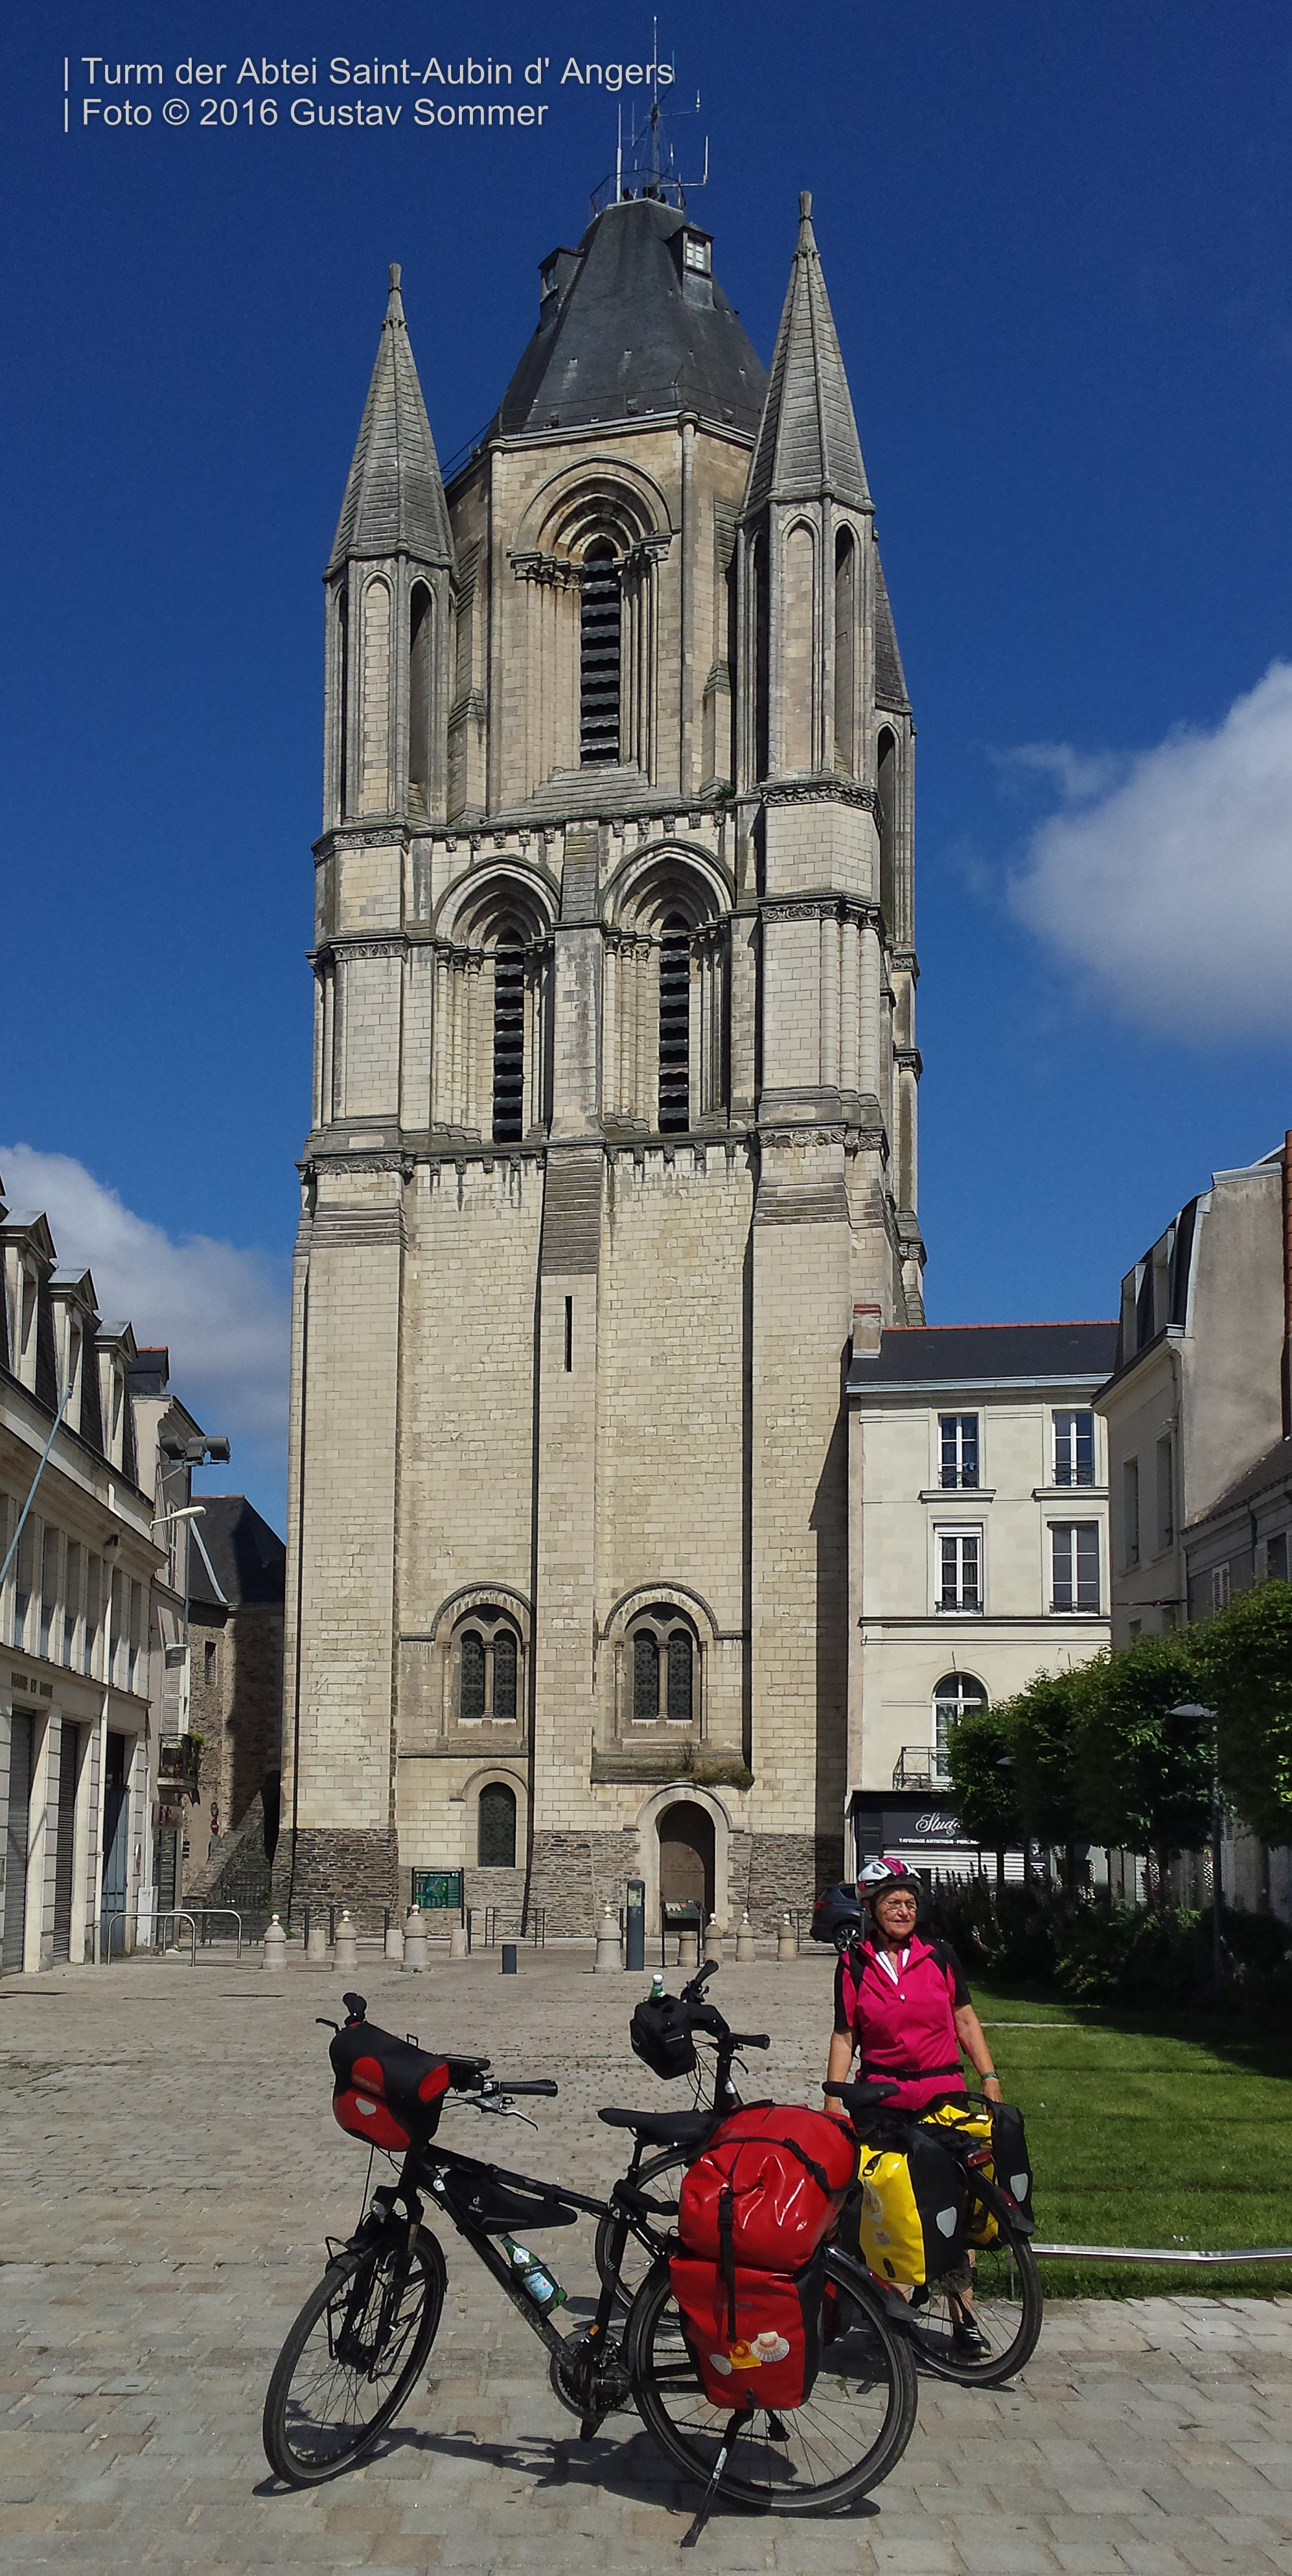 Bild 03 Turm der Abtei von Saint-Aubin d' Angers, Loire